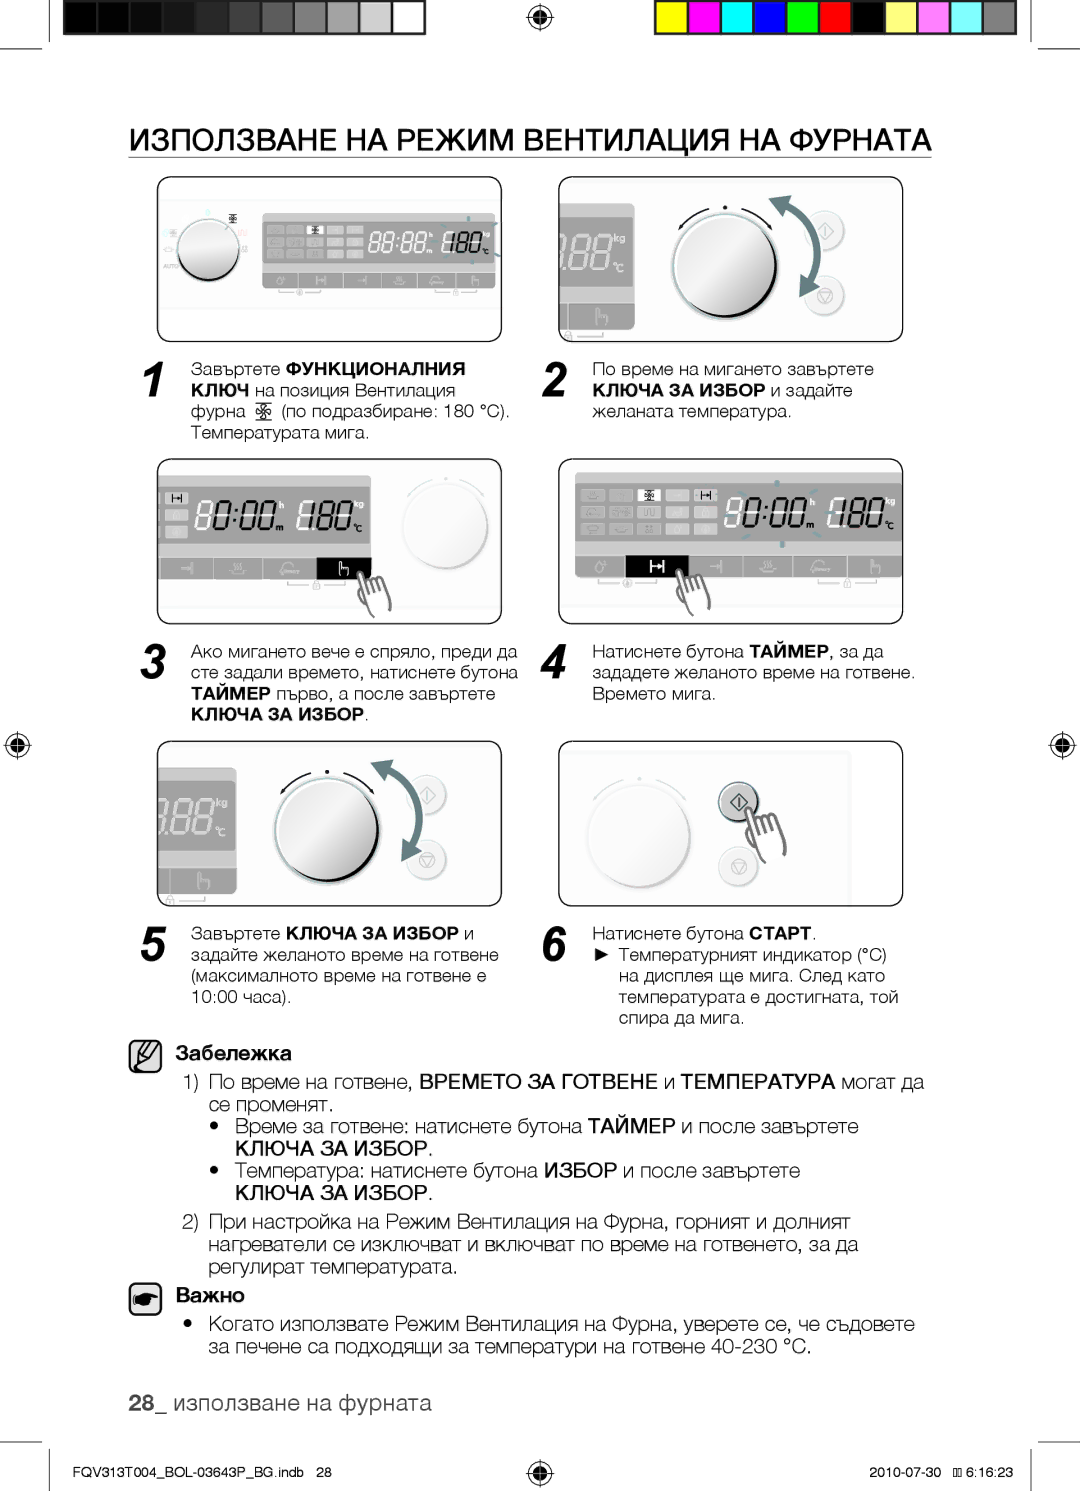 Samsung FQV313T004/BOL Използване на режим вентилация на фурната, 28 използване на фурната, Завъртете Ключа ЗА Избор и 